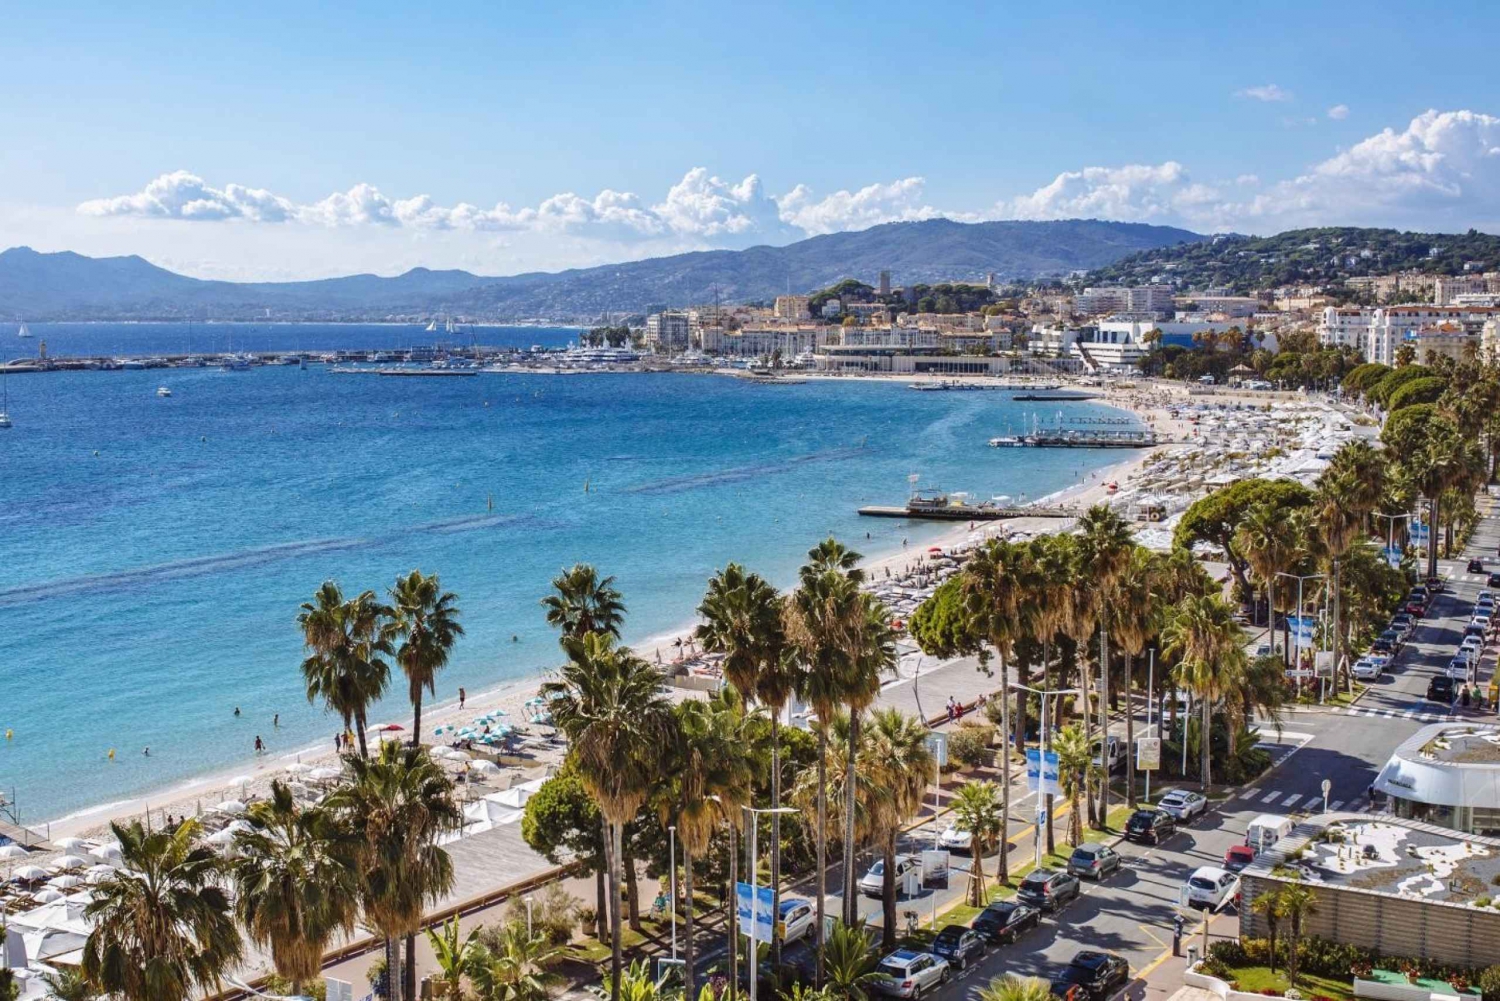 Ranskan Rivieran länsirannikko Nizzan ja Cannesin välillä